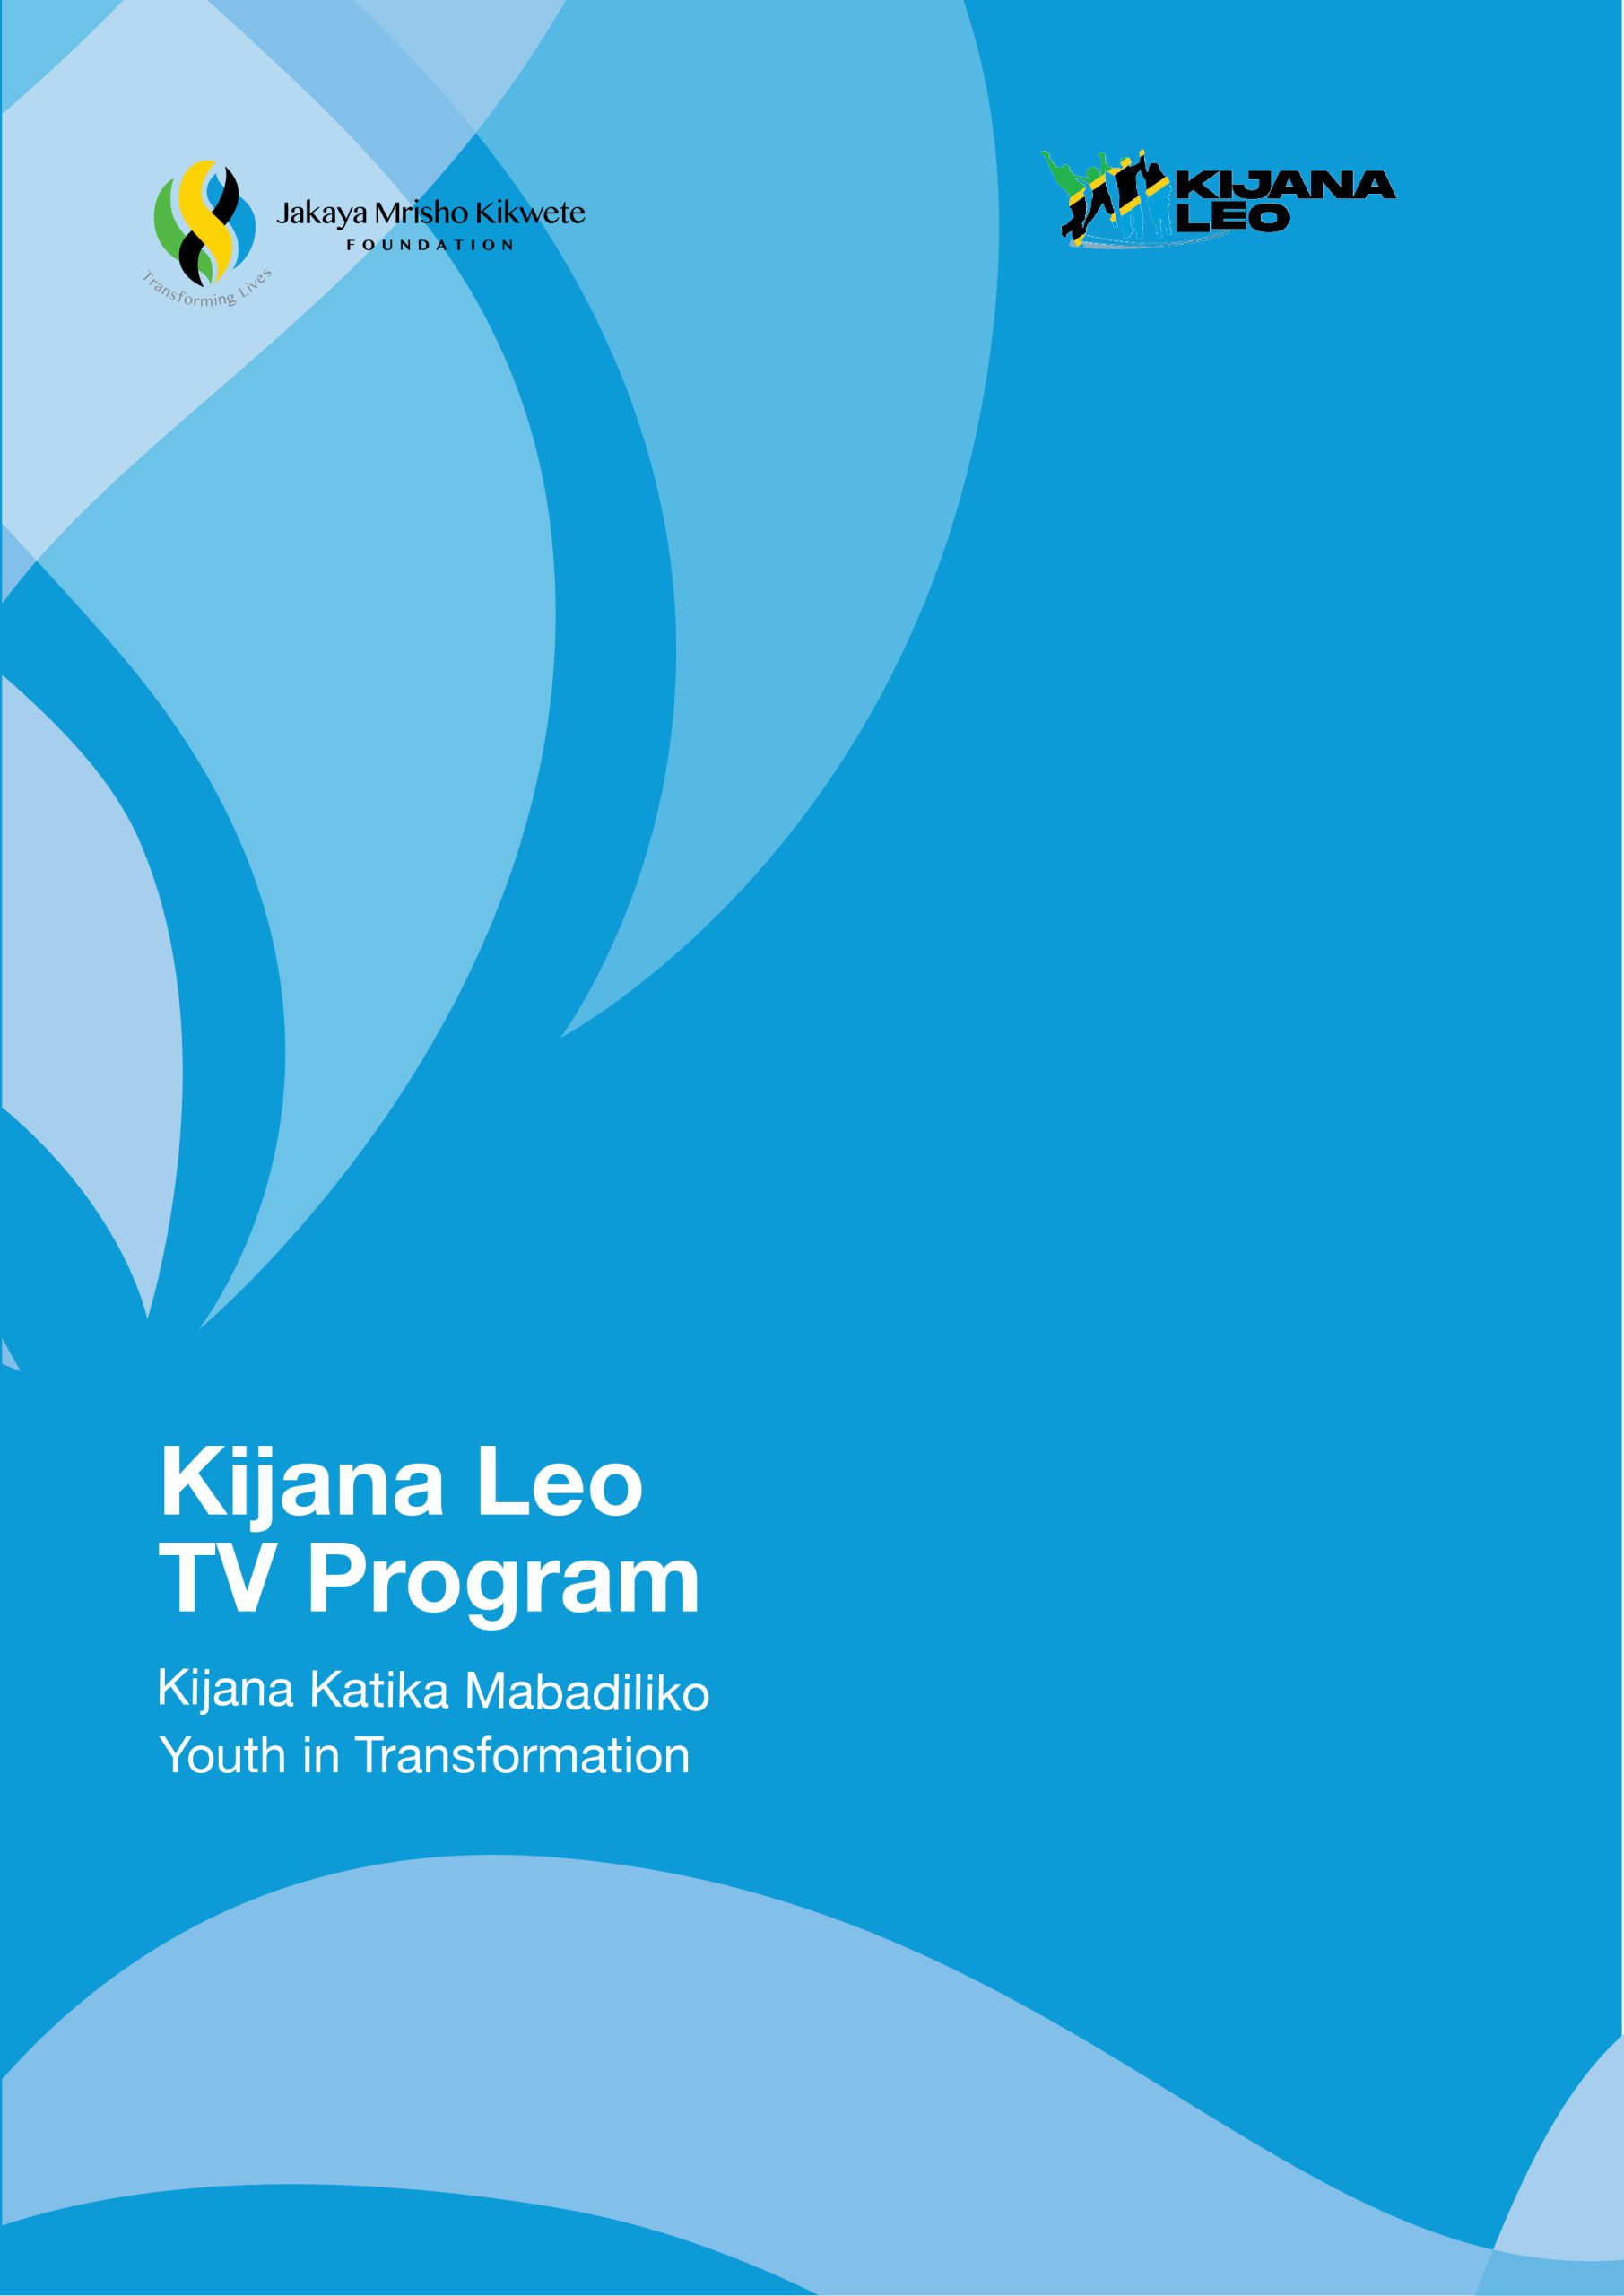 Kijana leo TV Program